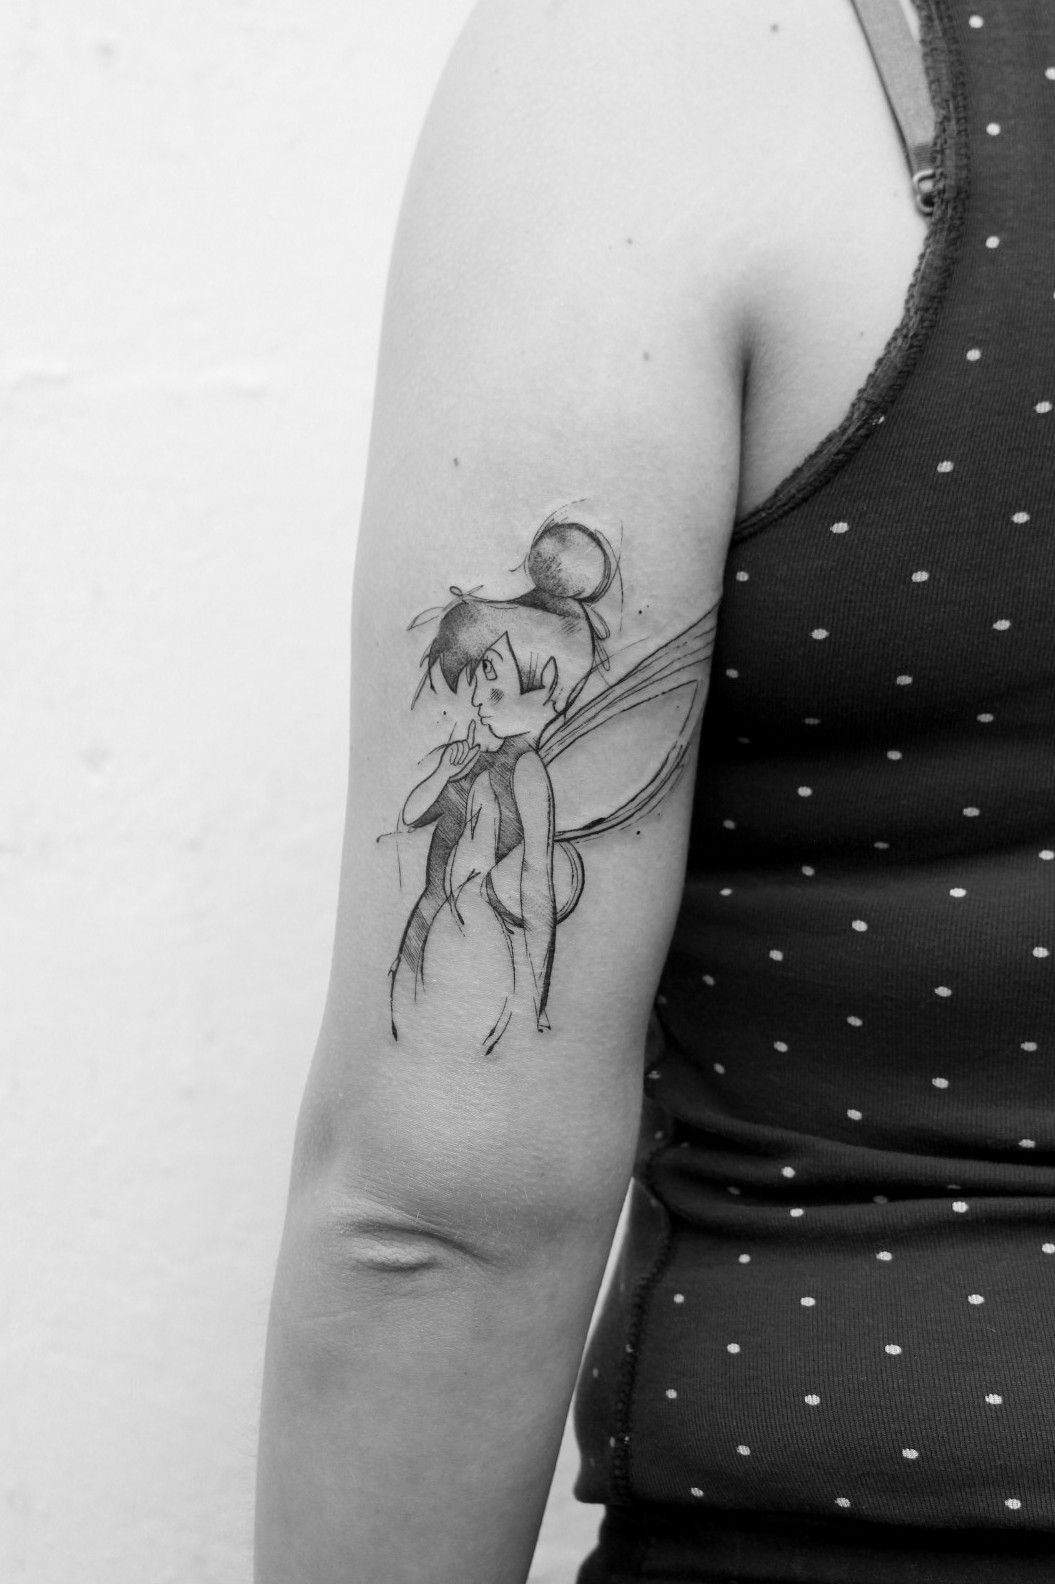 Tinkerbell Tattoo behind Ear - Tattoos Designs